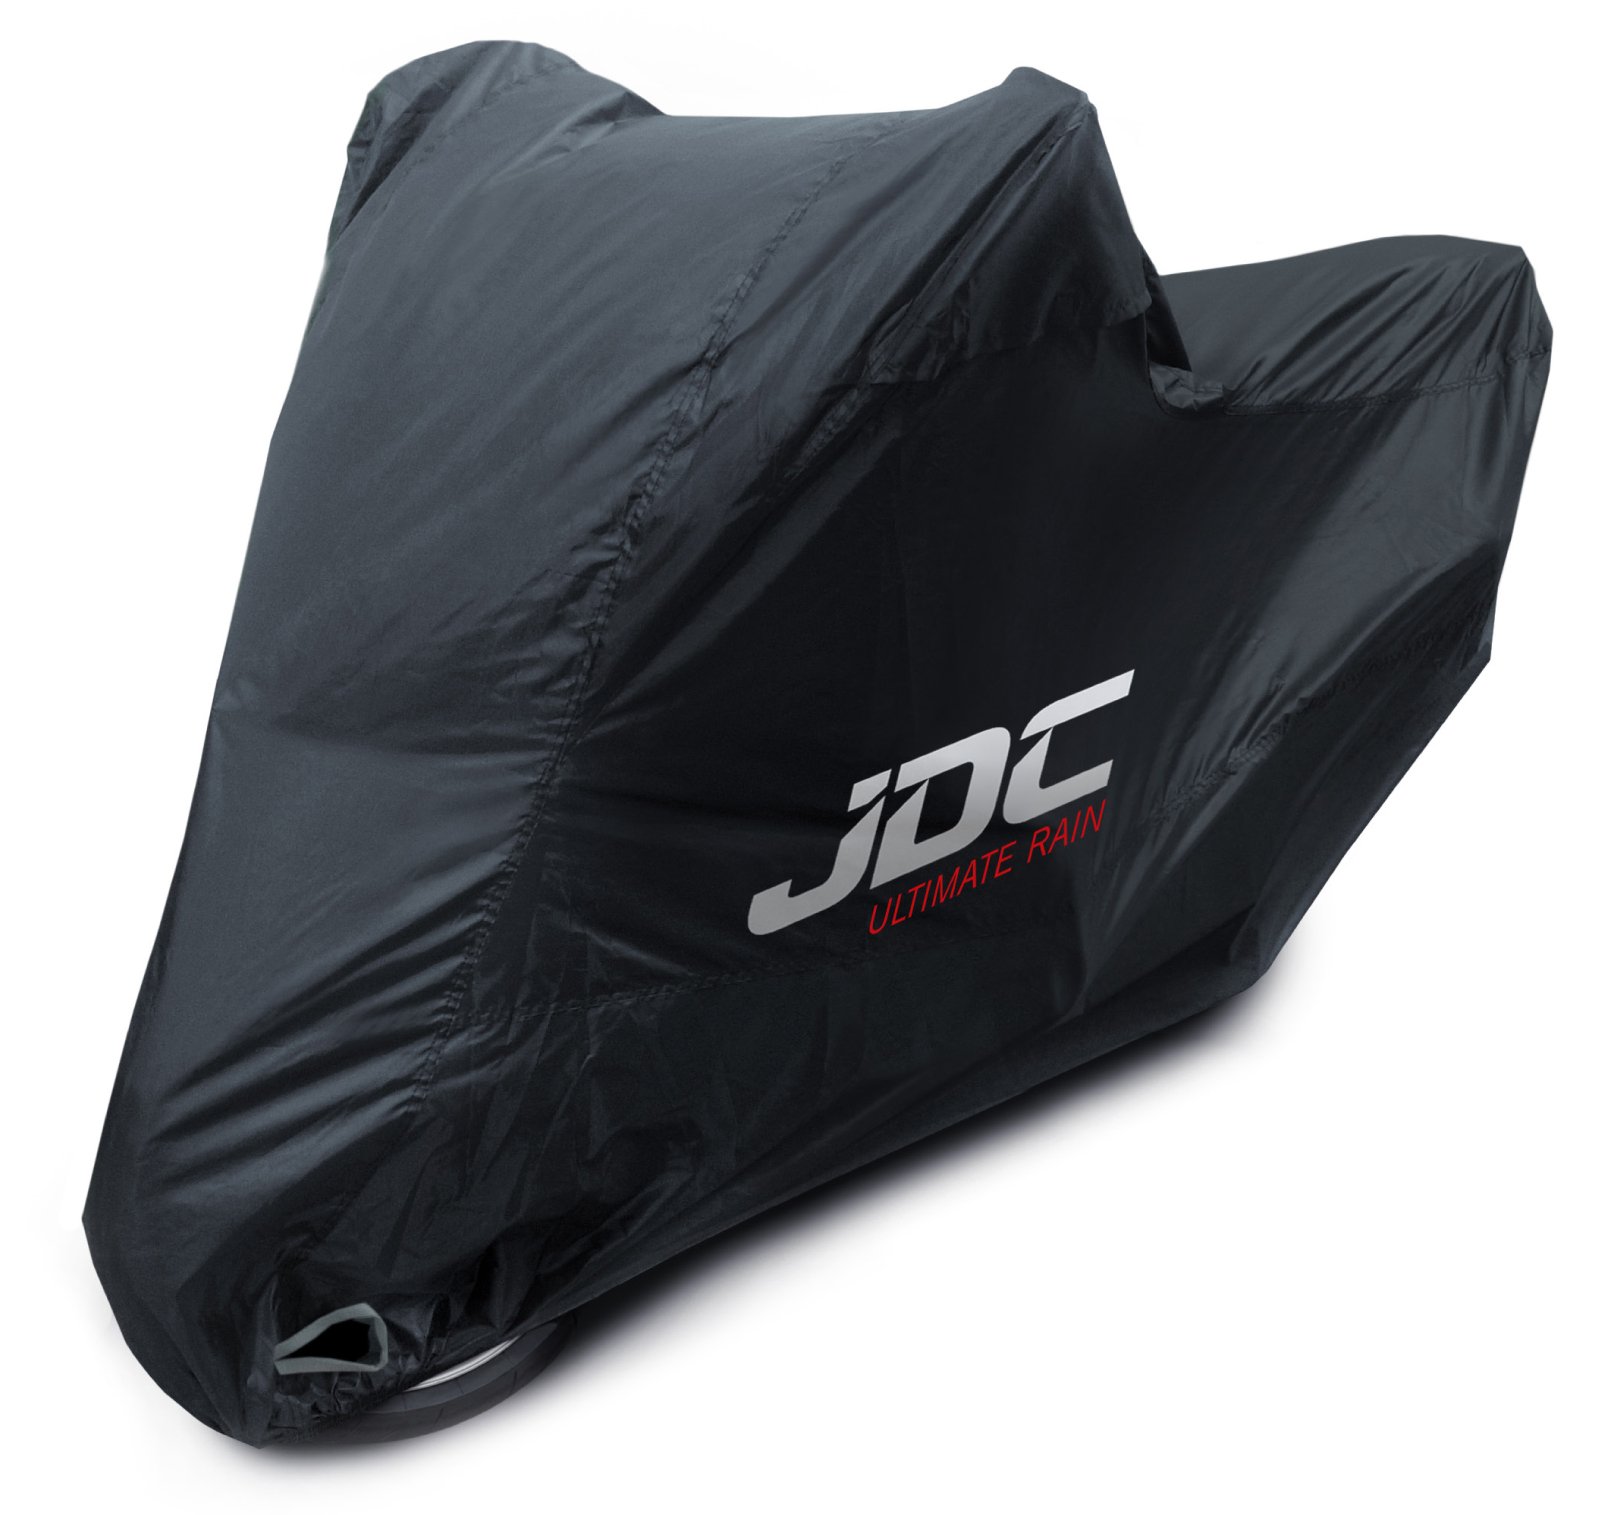 JDC 100% wasserdichte Motorradabdeckung – Ultimate RAIN (Strapazierfähig, weiches Futter, hitzebeständig, verschweißte Nähte) - XL von JDC